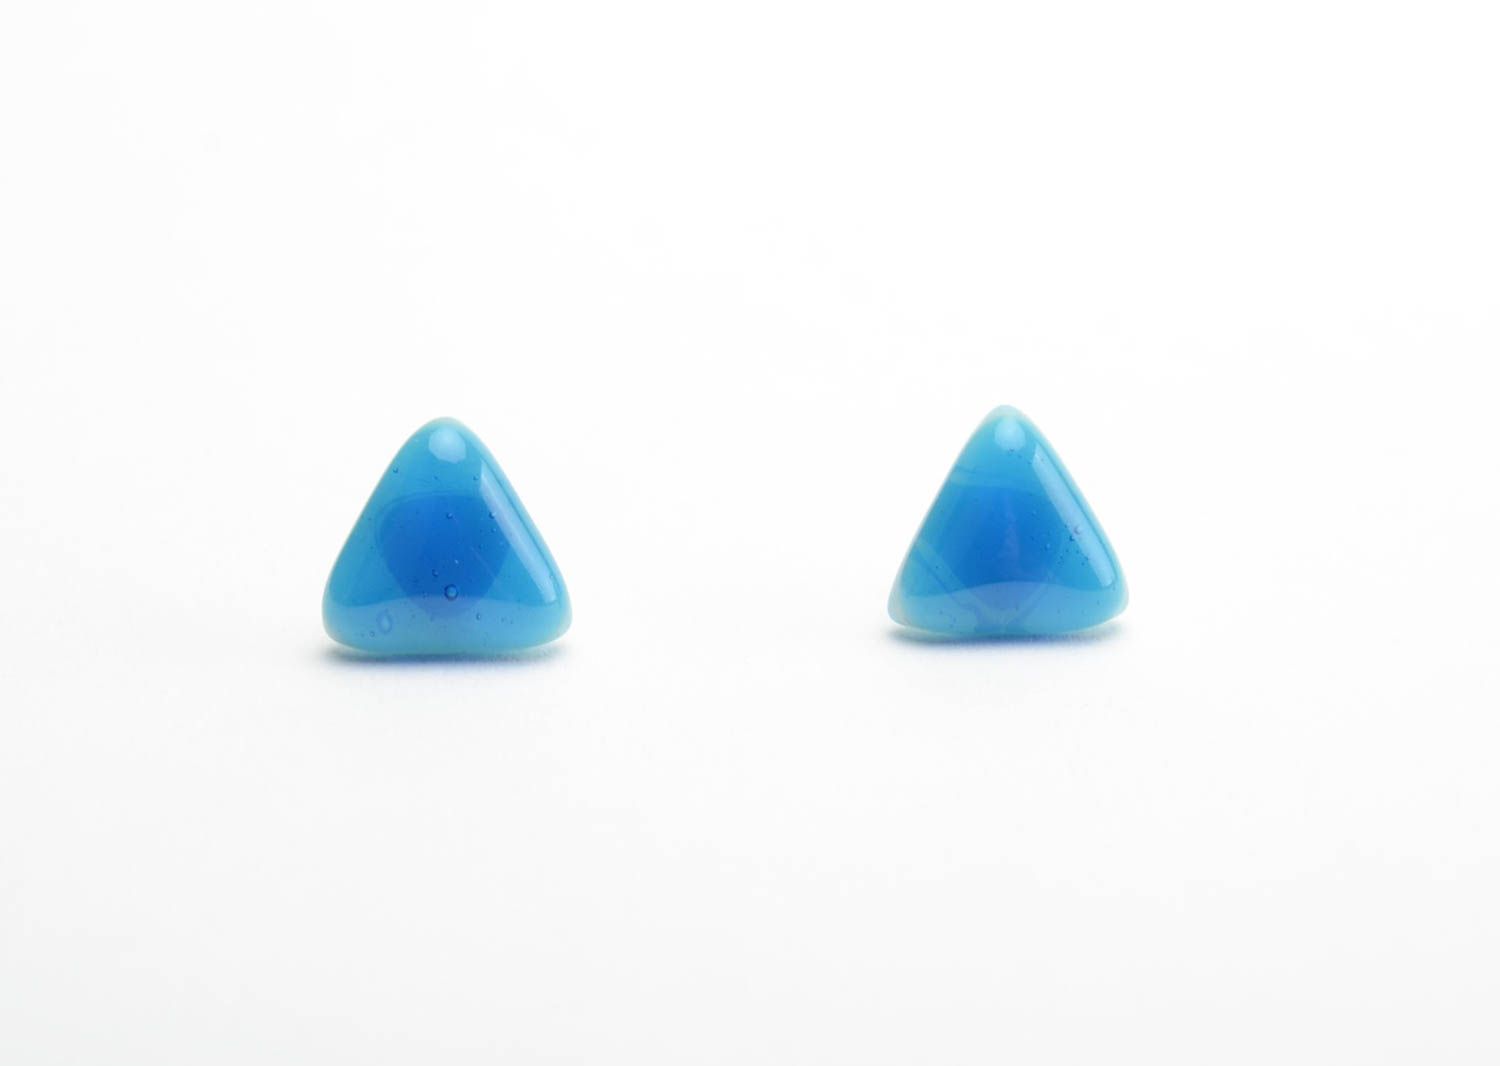 Треугольные серьги пусеты из стекла синие ручной работы в технике фьюзинг фото 5